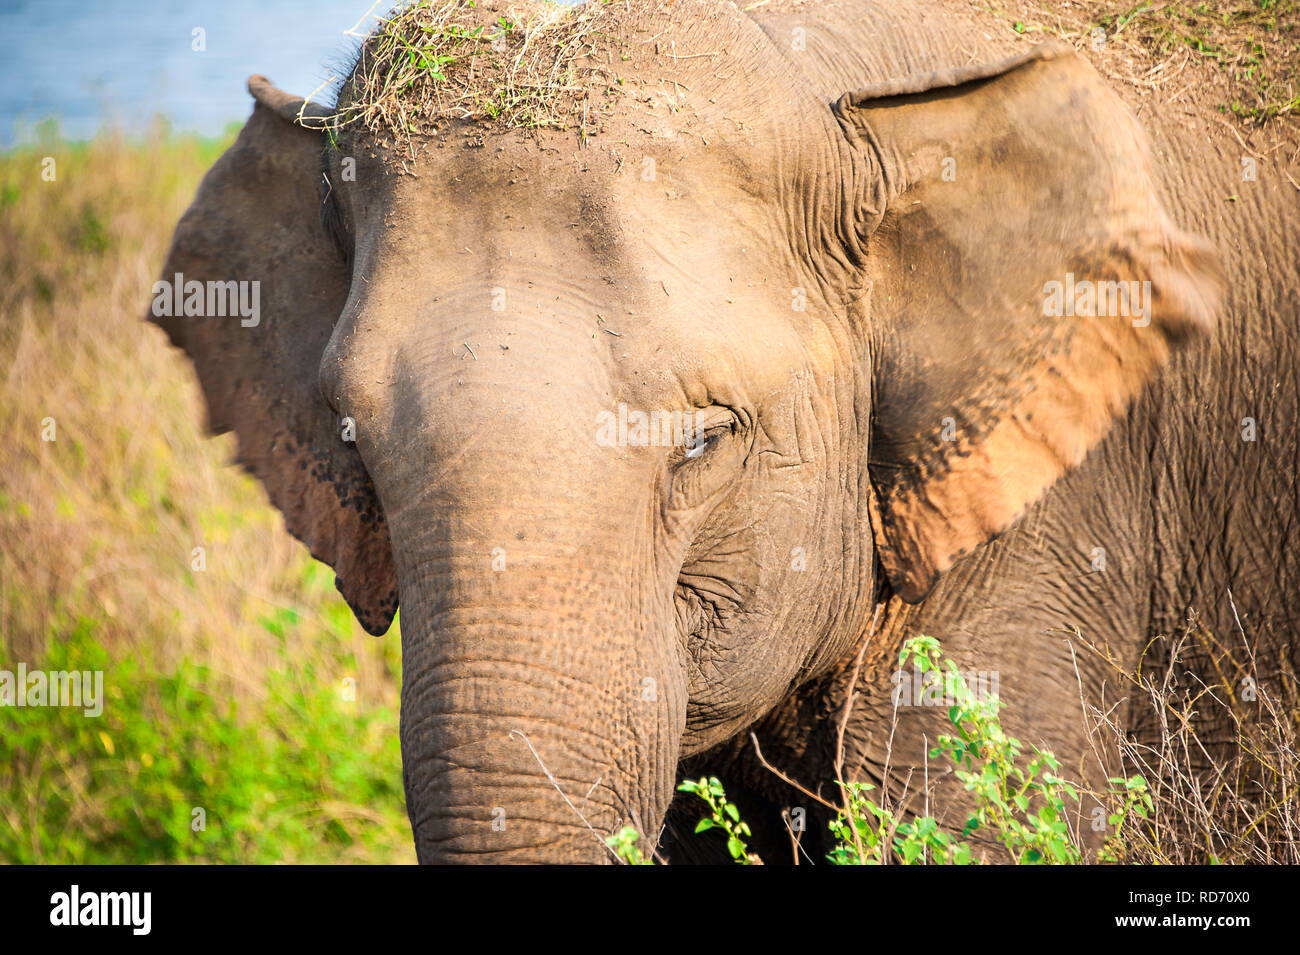 Jeune femelle éléphant indien (Elephas maximus indicus) dans l'habitat naturel. Closeup portrait en superficie de terres humides, parc national de Mineriya, Sri Lanka Banque D'Images